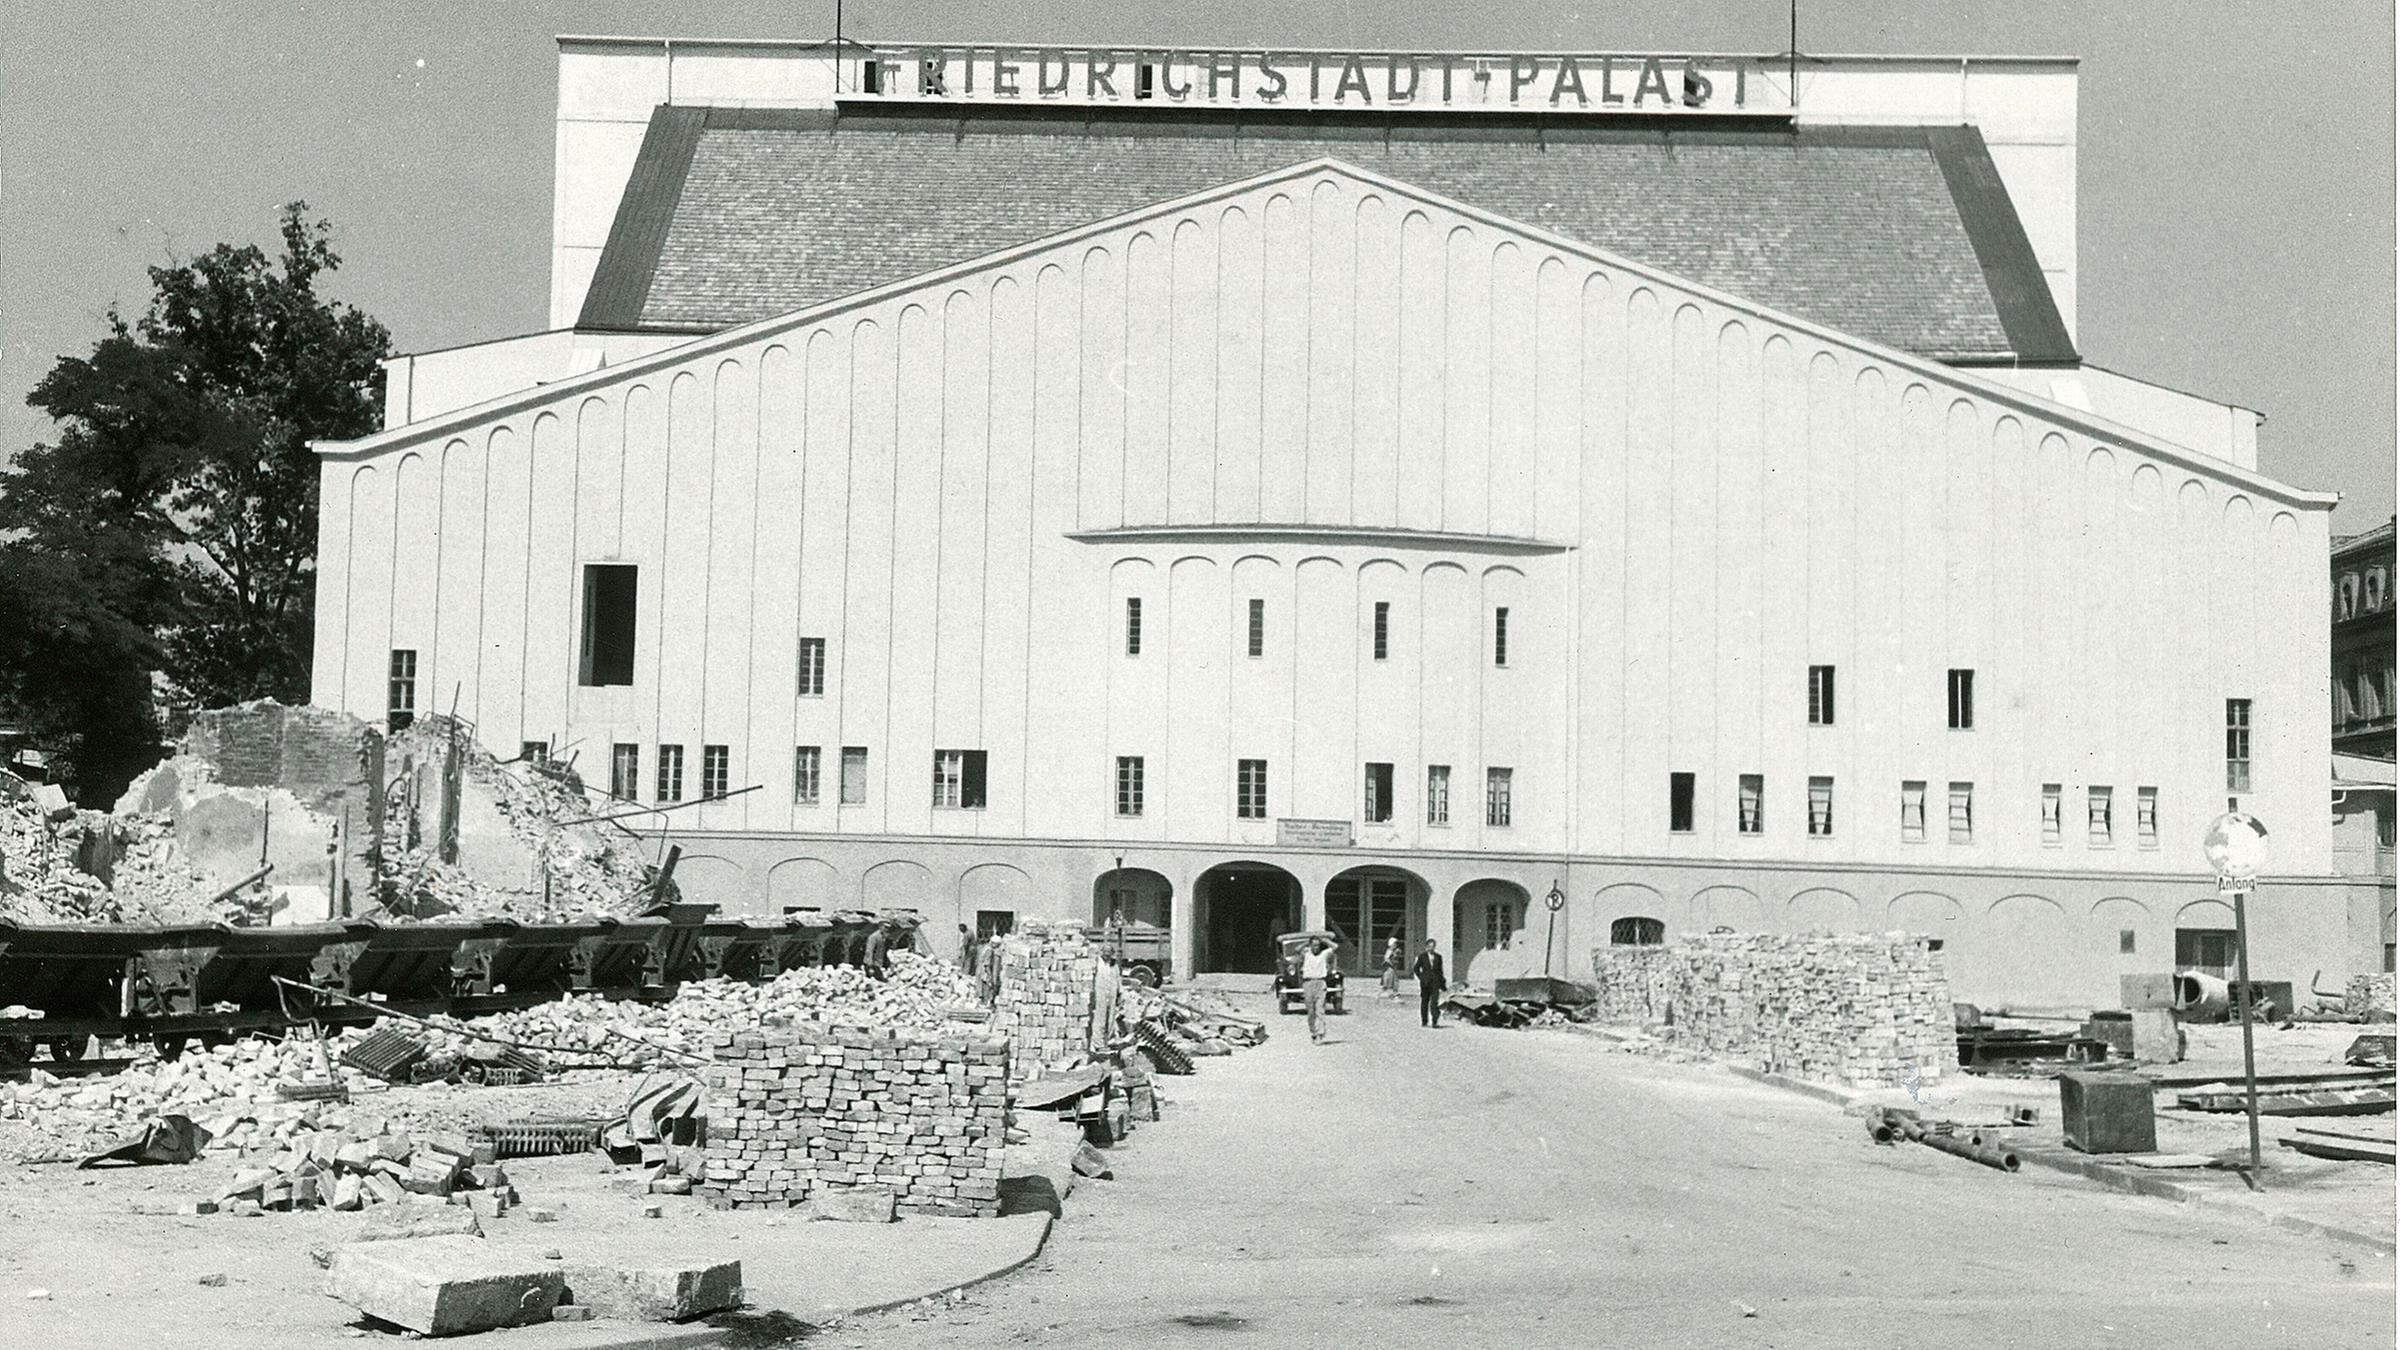 Bühnenhaus des Friedrichstadt-Palastes nach Abschluss der Wiederaufbauarbeiten um 1950 